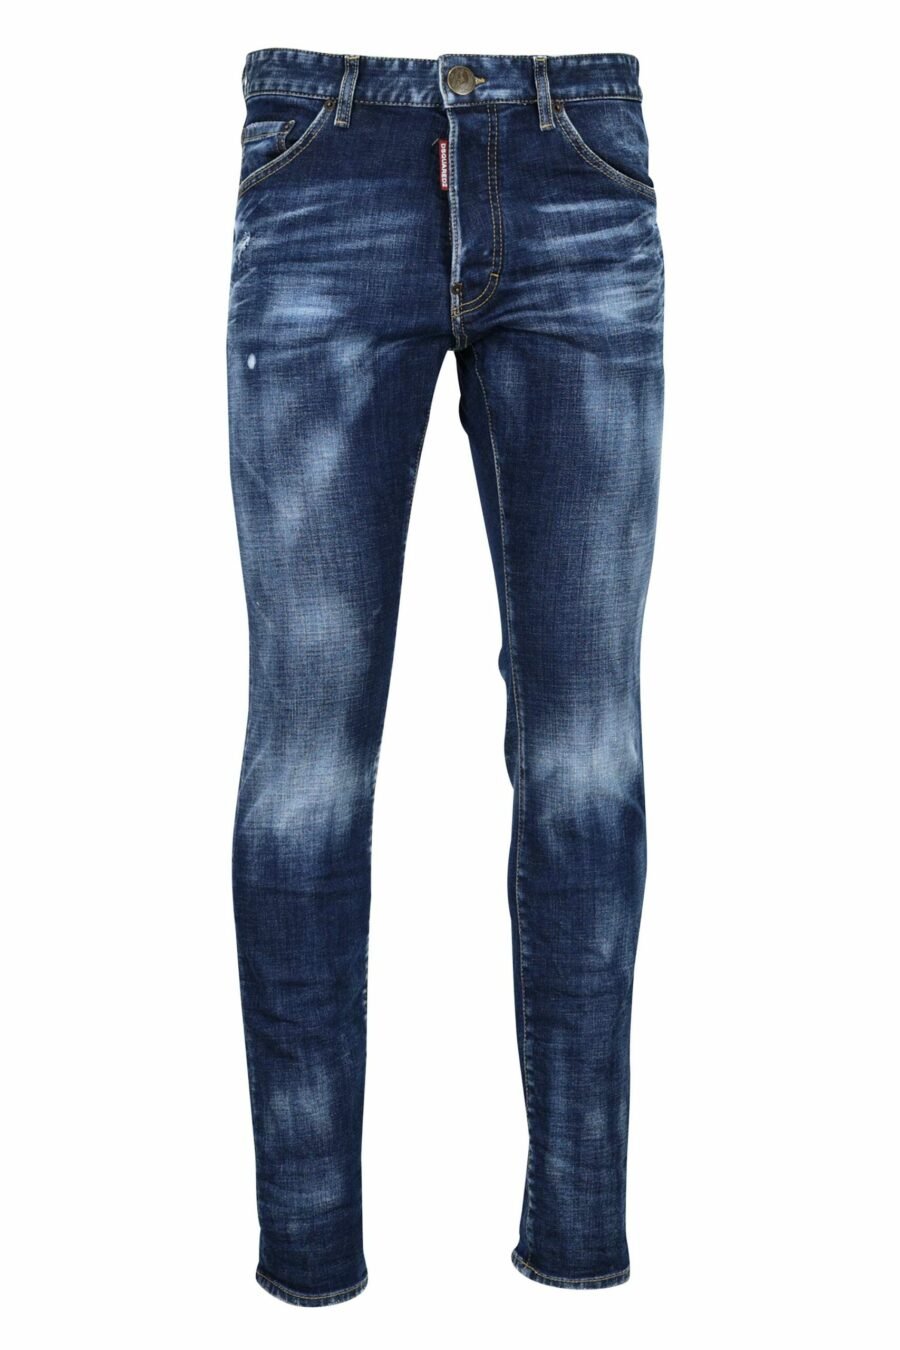 Pantalon en jean bleu effiloché - 8052134970072 scaled